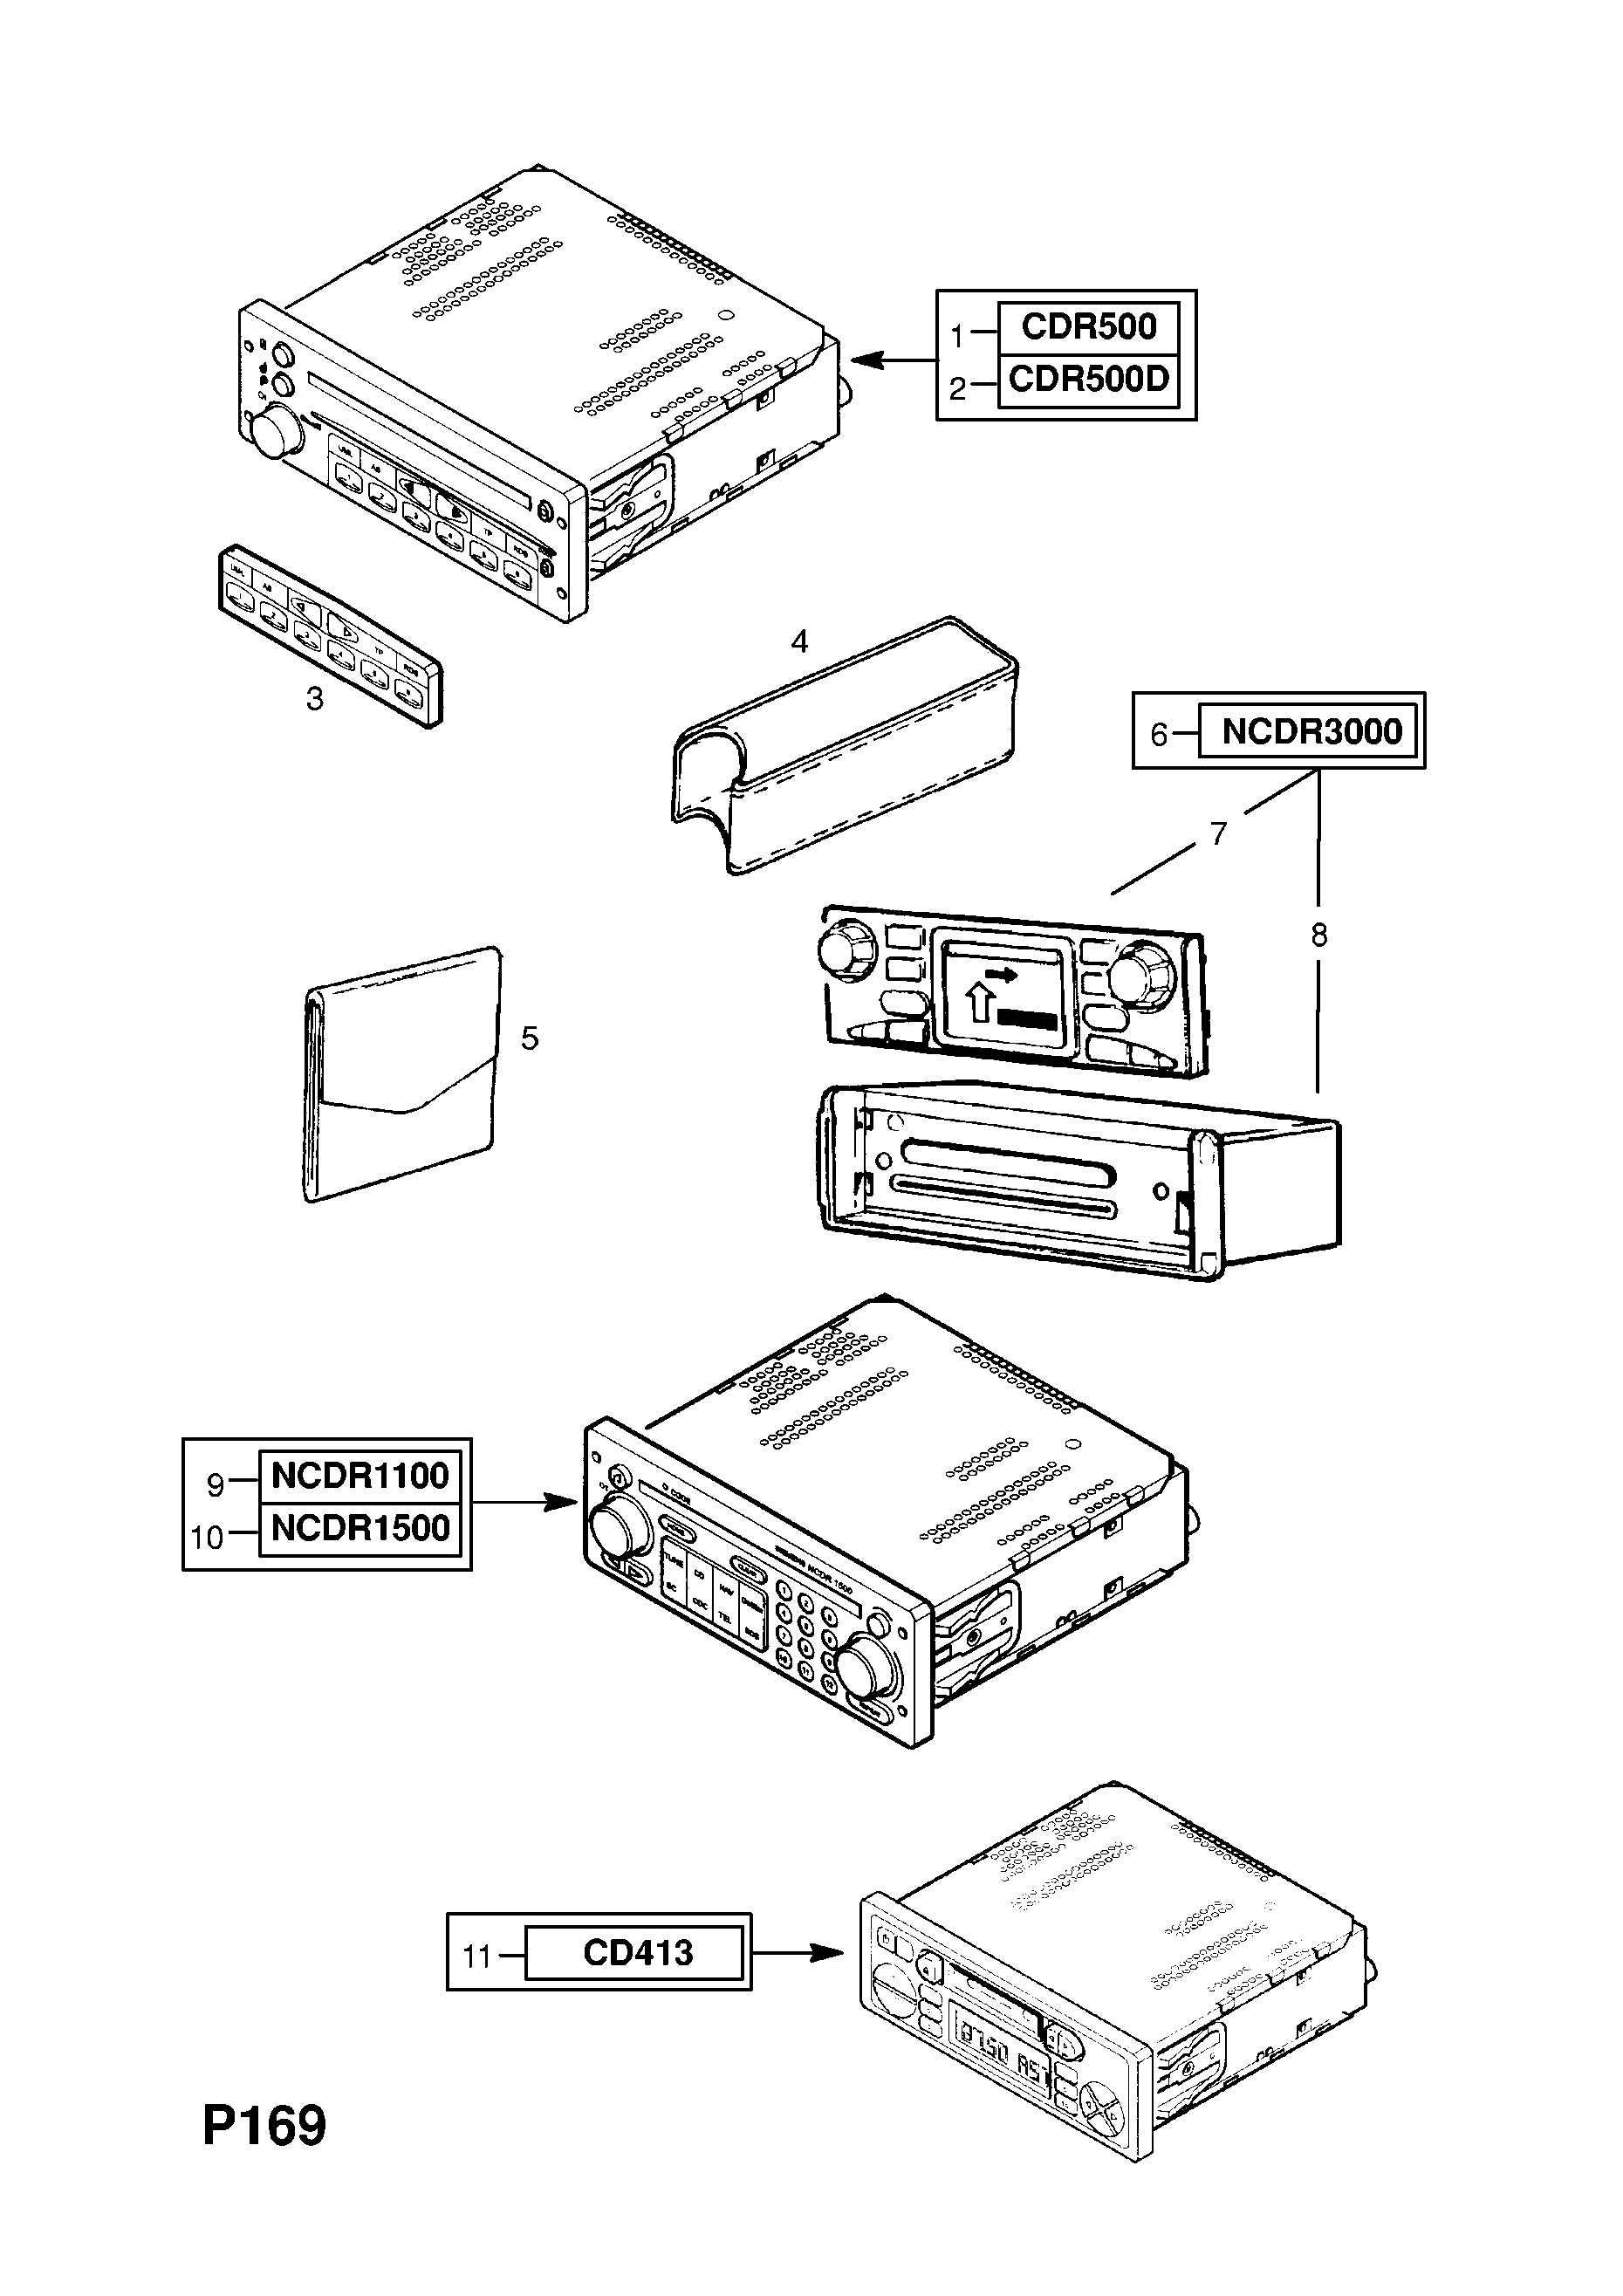 RADIO COM COMPACT DISC